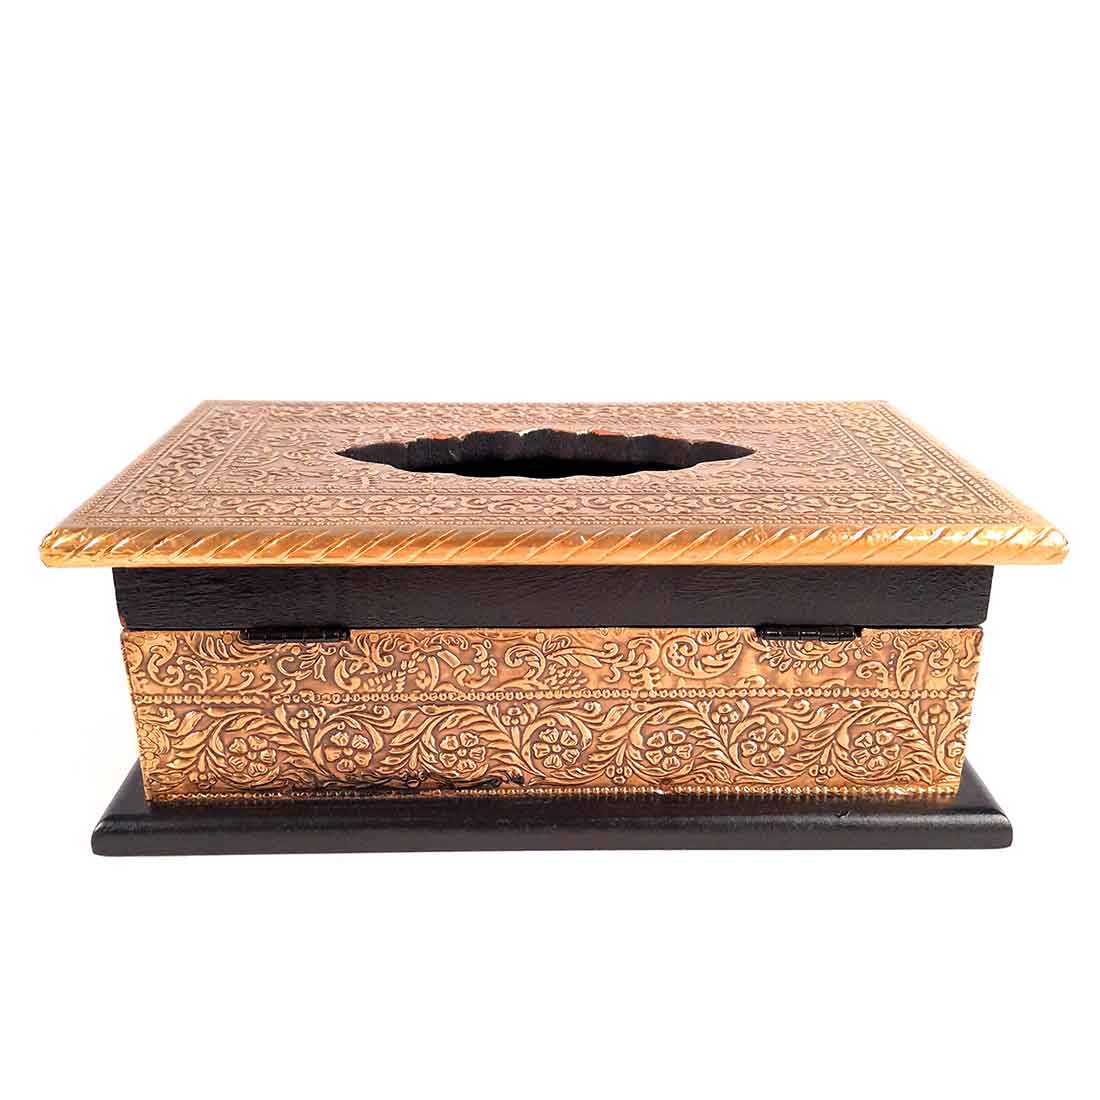 Brass Embellished Tissue Holder - Dining Table Decoration Items - ApkaMart